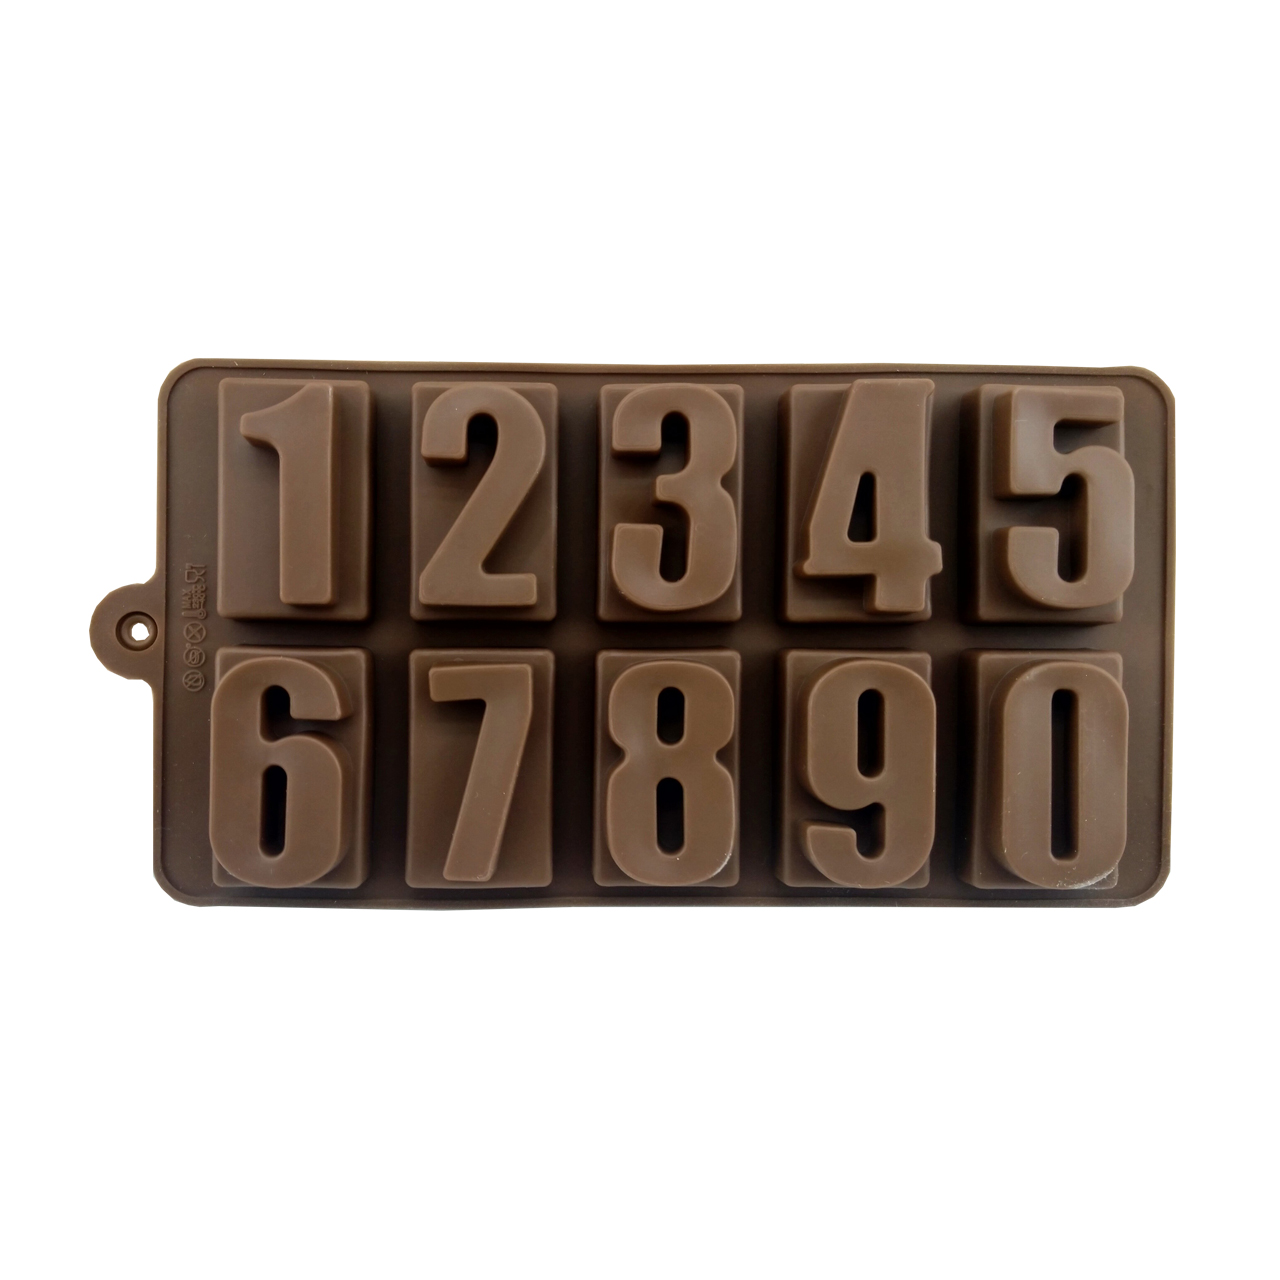 آنباکس قالب شکلات طرح اعداد کد 707 توسط زینب محمدیان در تاریخ ۰۹ شهریور ۱۴۰۰